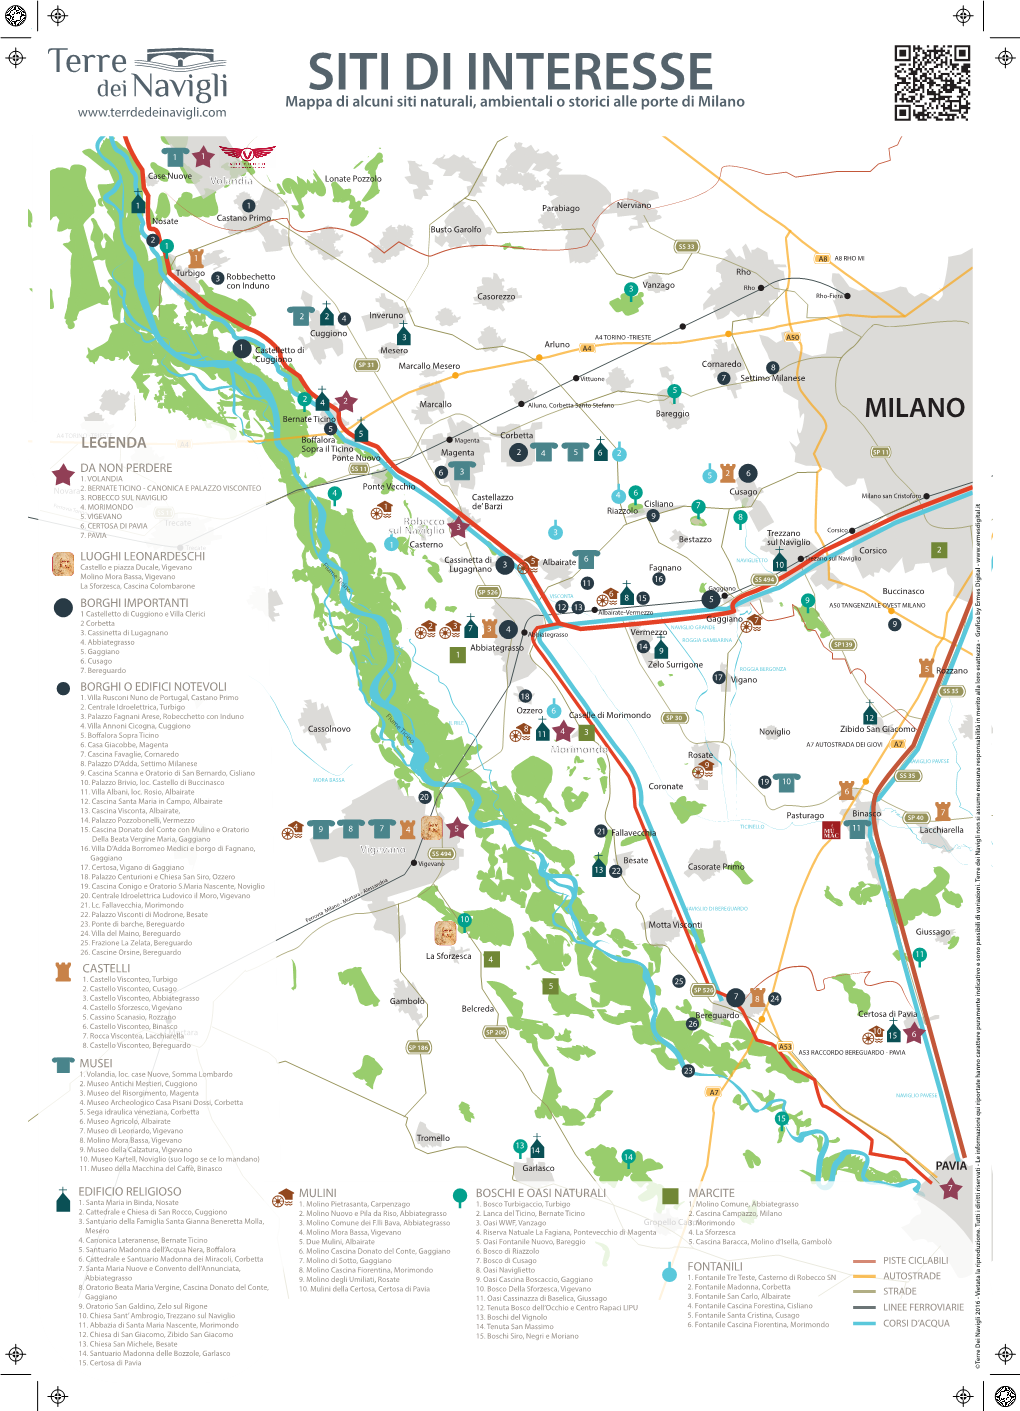 SITI DI INTERESSE Mappa Di Alcuni Siti Naturali, Ambientali O Storici Alle Porte Di Milano